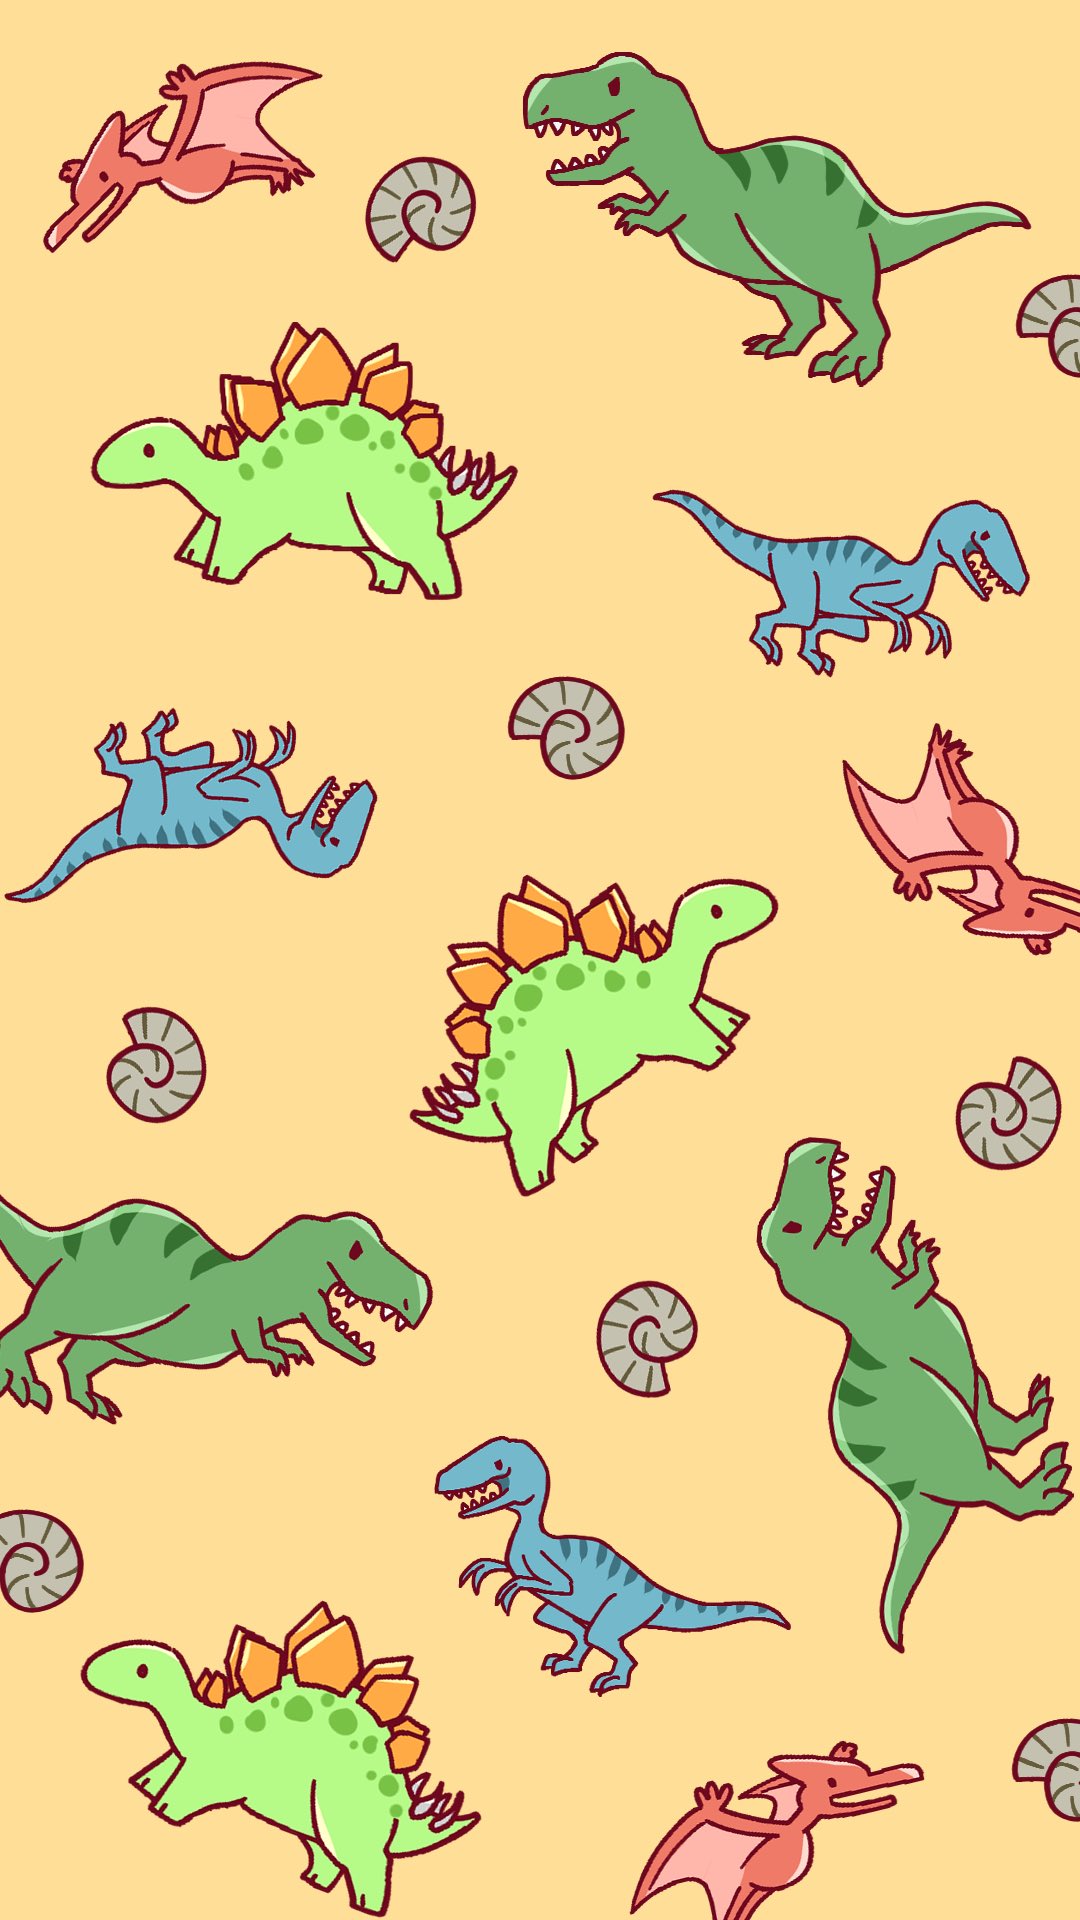 咲牙めぶ 昨日ジュラシックパークを見たので 恐竜くんがいっぱいな壁紙風イラスト描いてみました 何度見てもハラハラして面白いですね T Co Q3xiypmyos Twitter